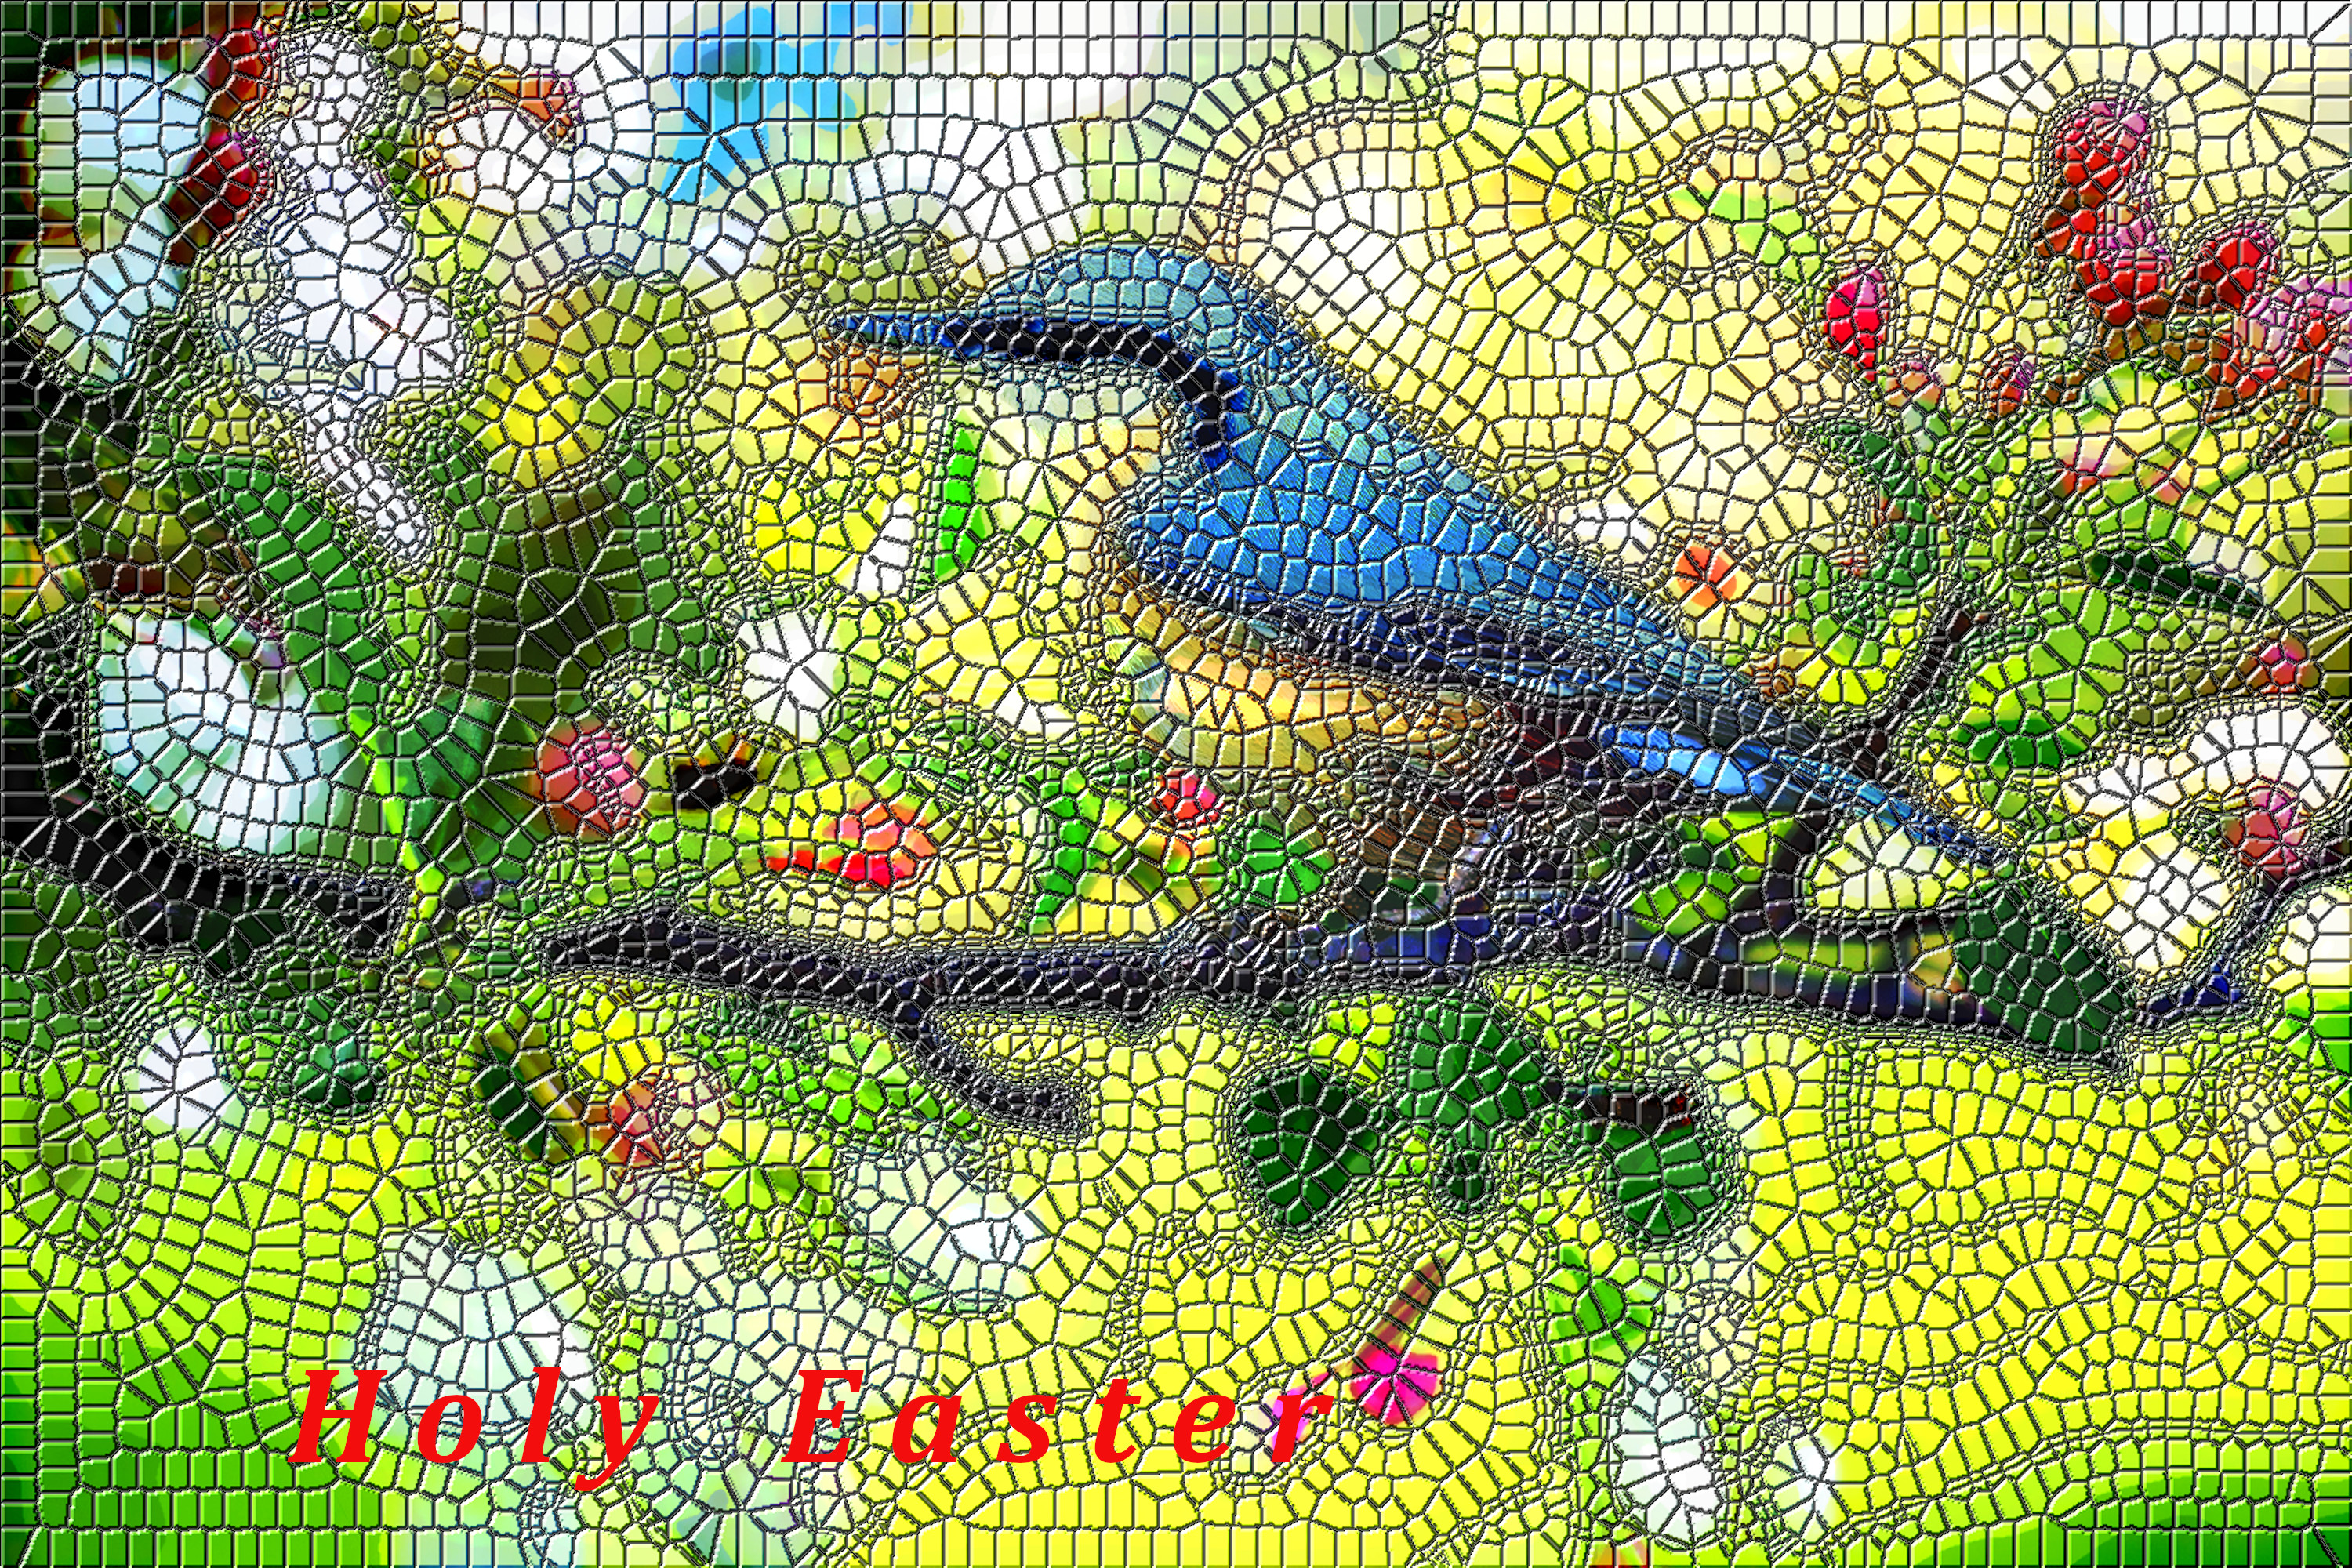 2020-04-12 11-05-53 spring-bird-2295431_1920, as a Mosaic Roman style, with an optional lighjt effect.jpg